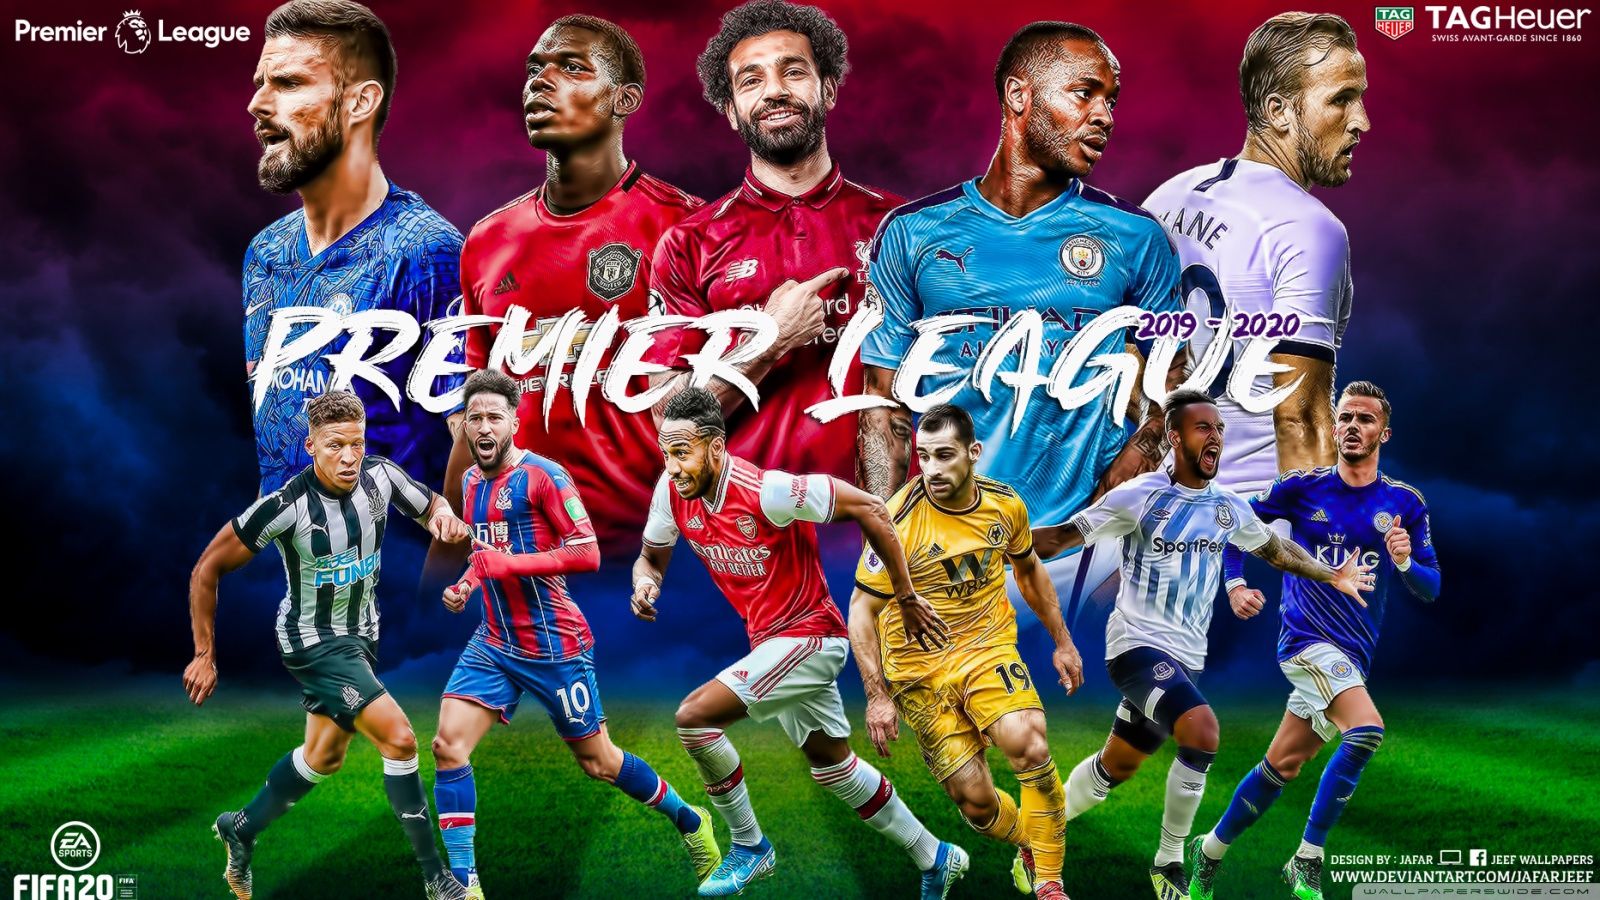 premier-league-wallpapers-4k-hd-premier-league-backgrounds-on-wallpaperbat